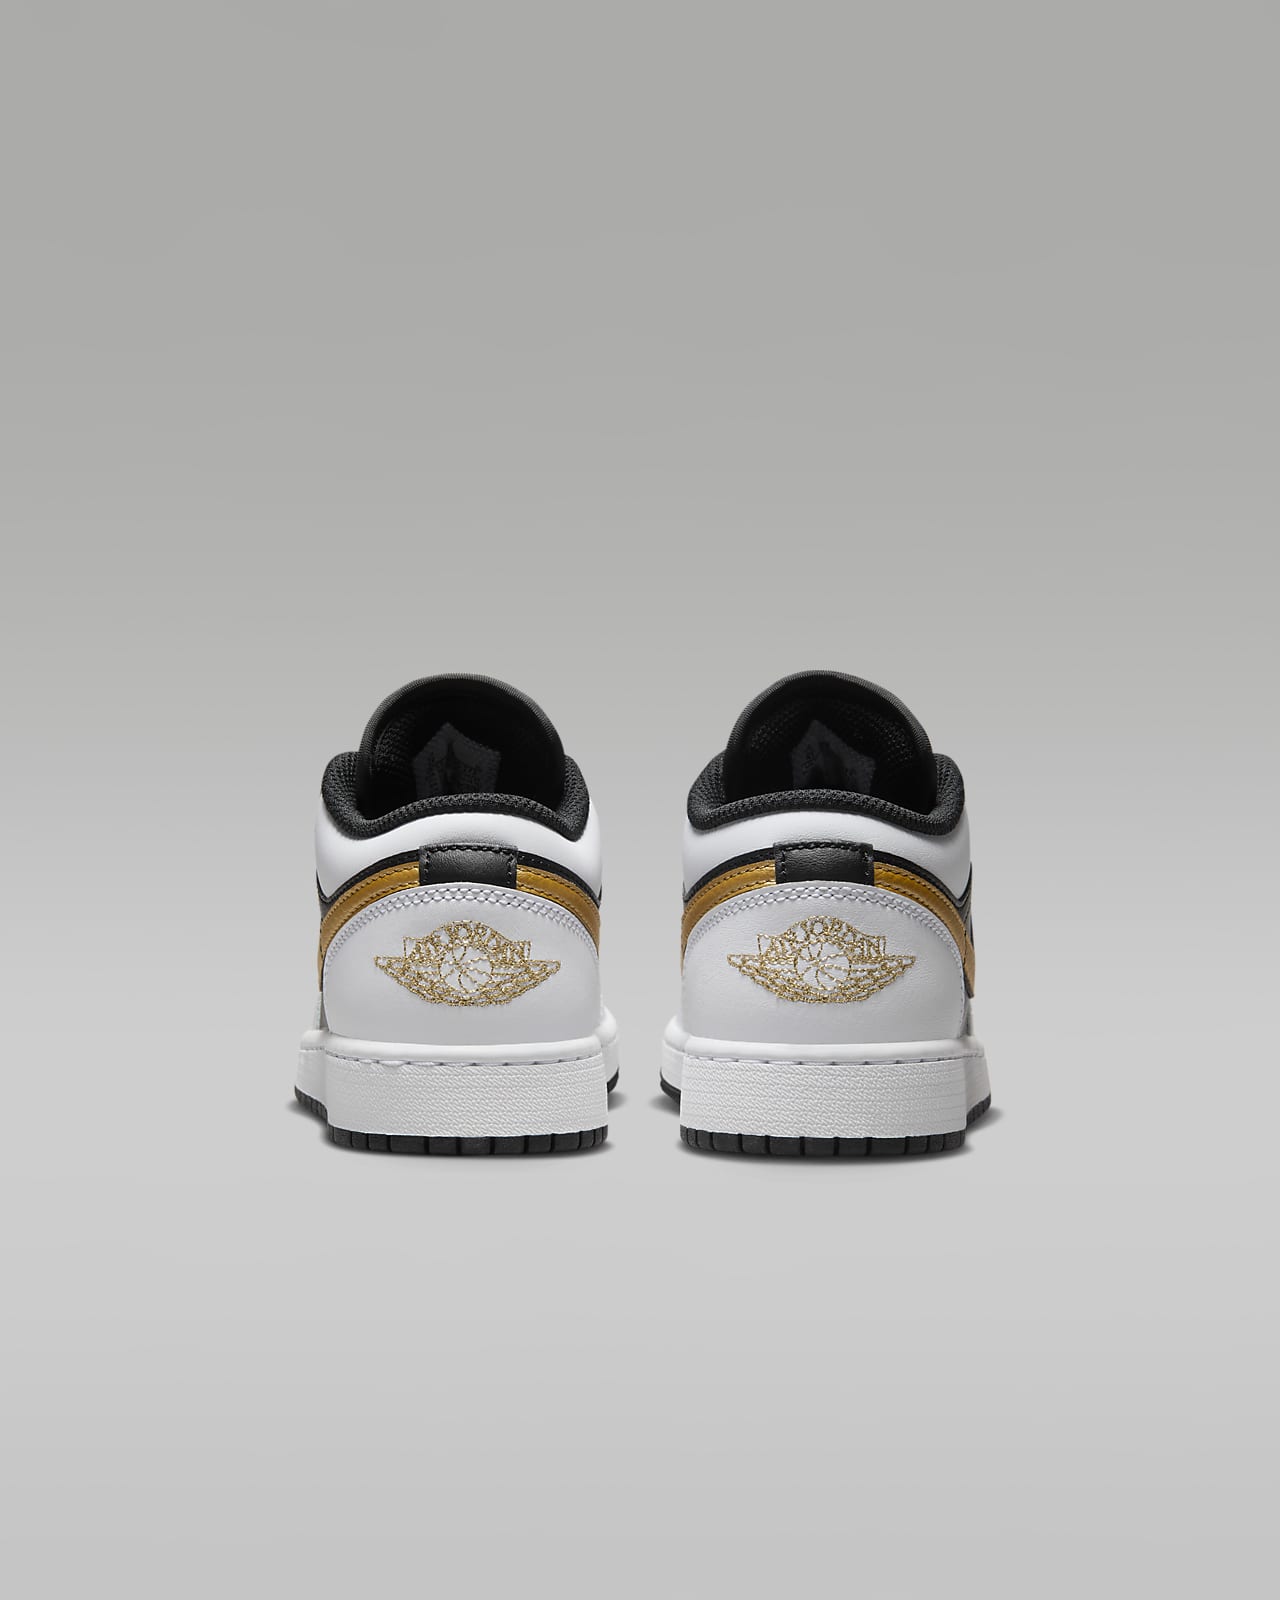 Air Jordan 1 Low Big Kids' Shoes. Nike.com